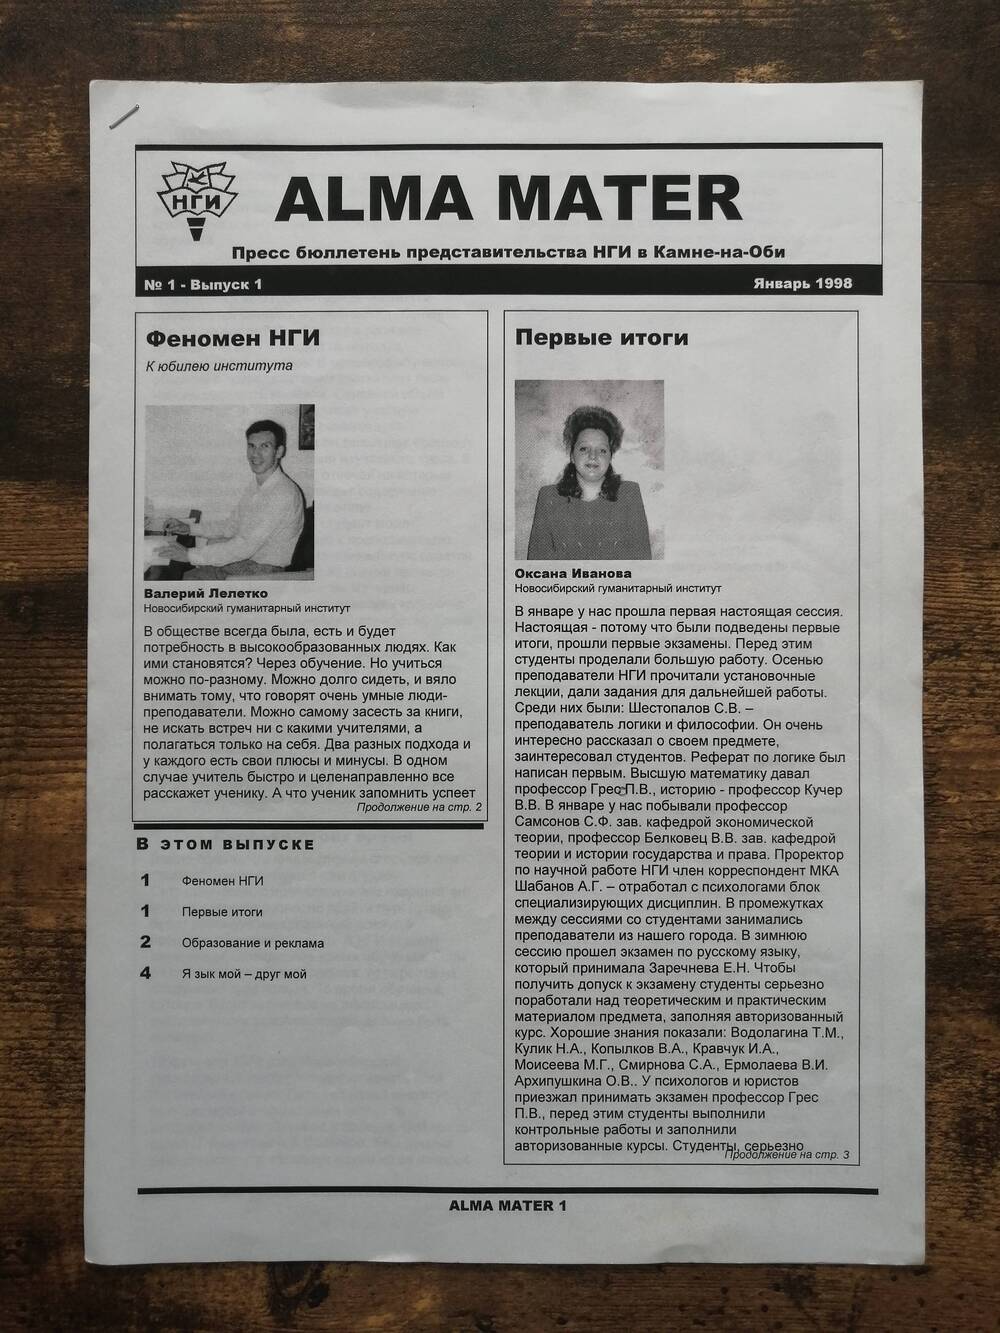 Пресс бюллетень ALMA MATER представительства Новосибирского гуманитарного института в Камне-на-Оби, №1 - выпуск 1.